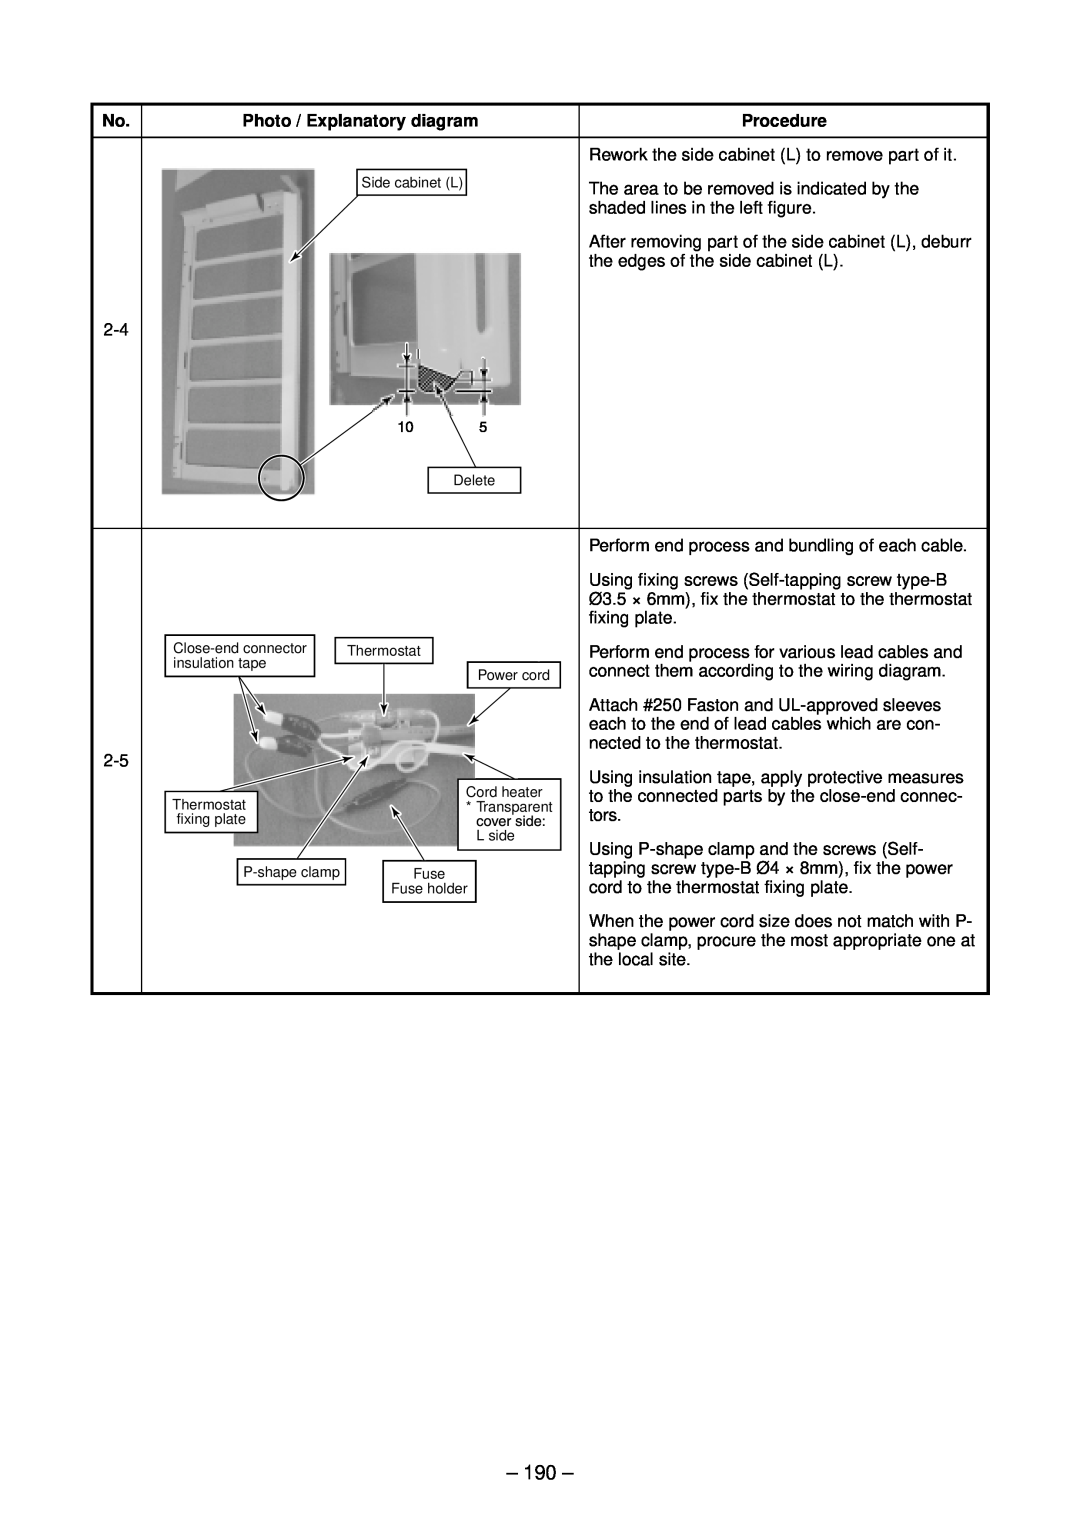 Toshiba RAV-SM802UT-E, RAV-SM1102UT-E, RAV-SM1402UT-E, RAV-SM562UT-E 190, Photo / Explanatory diagram, Procedure 